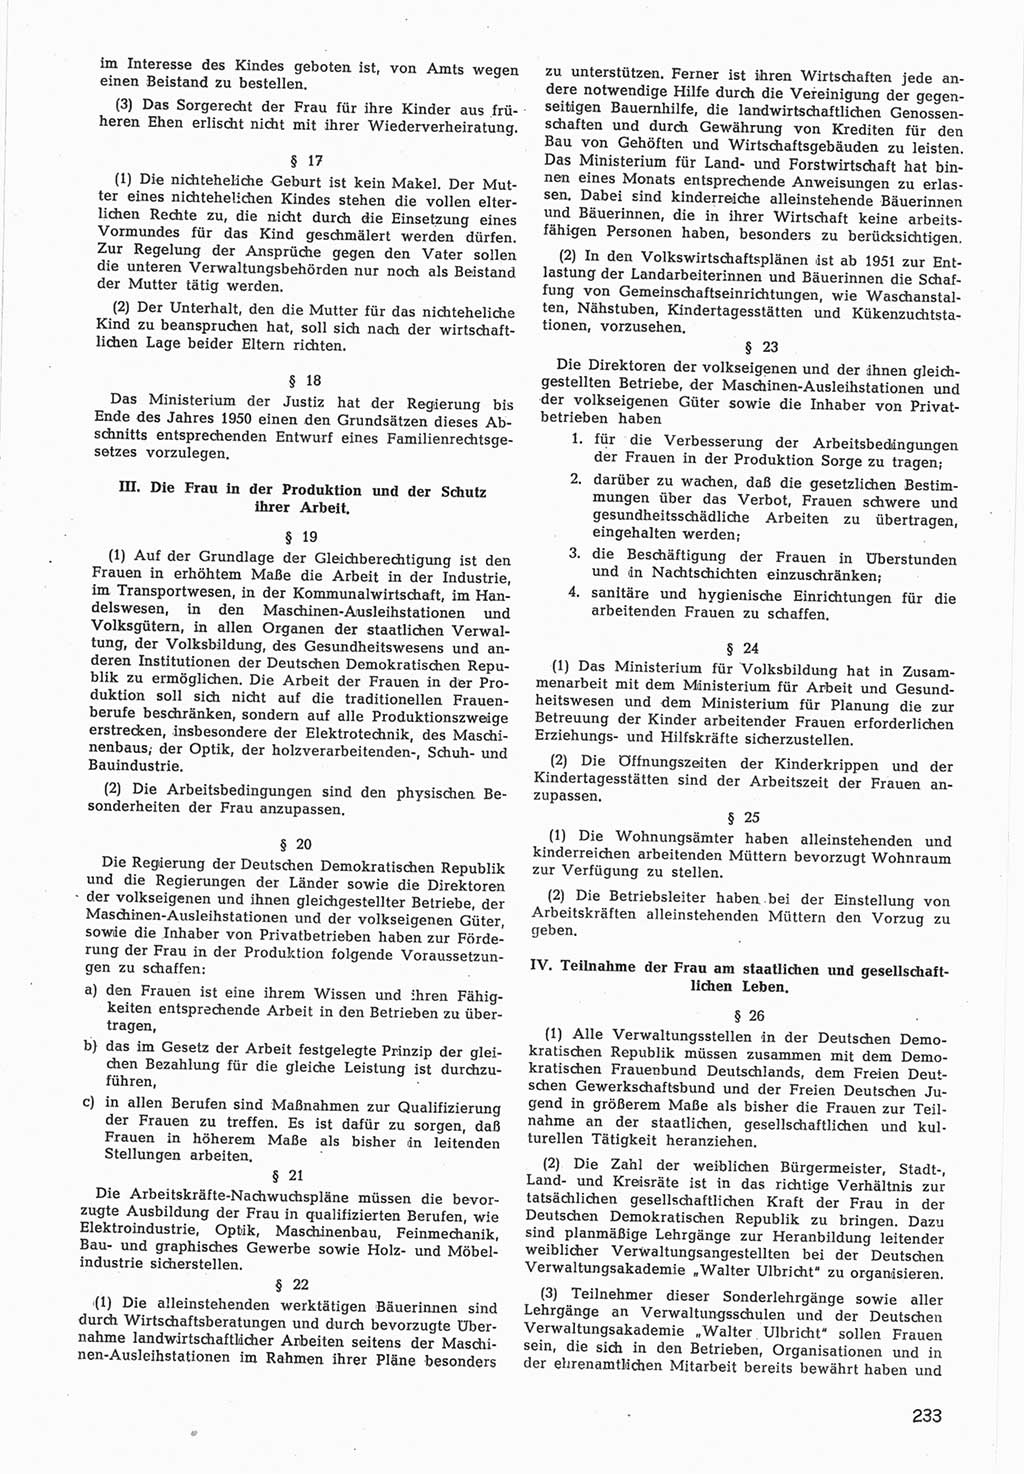 Provisorische Volkskammer (VK) der Deutschen Demokratischen Republik (DDR) 1949-1950, Dokument 835 (Prov. VK DDR 1949-1950, Dok. 835)